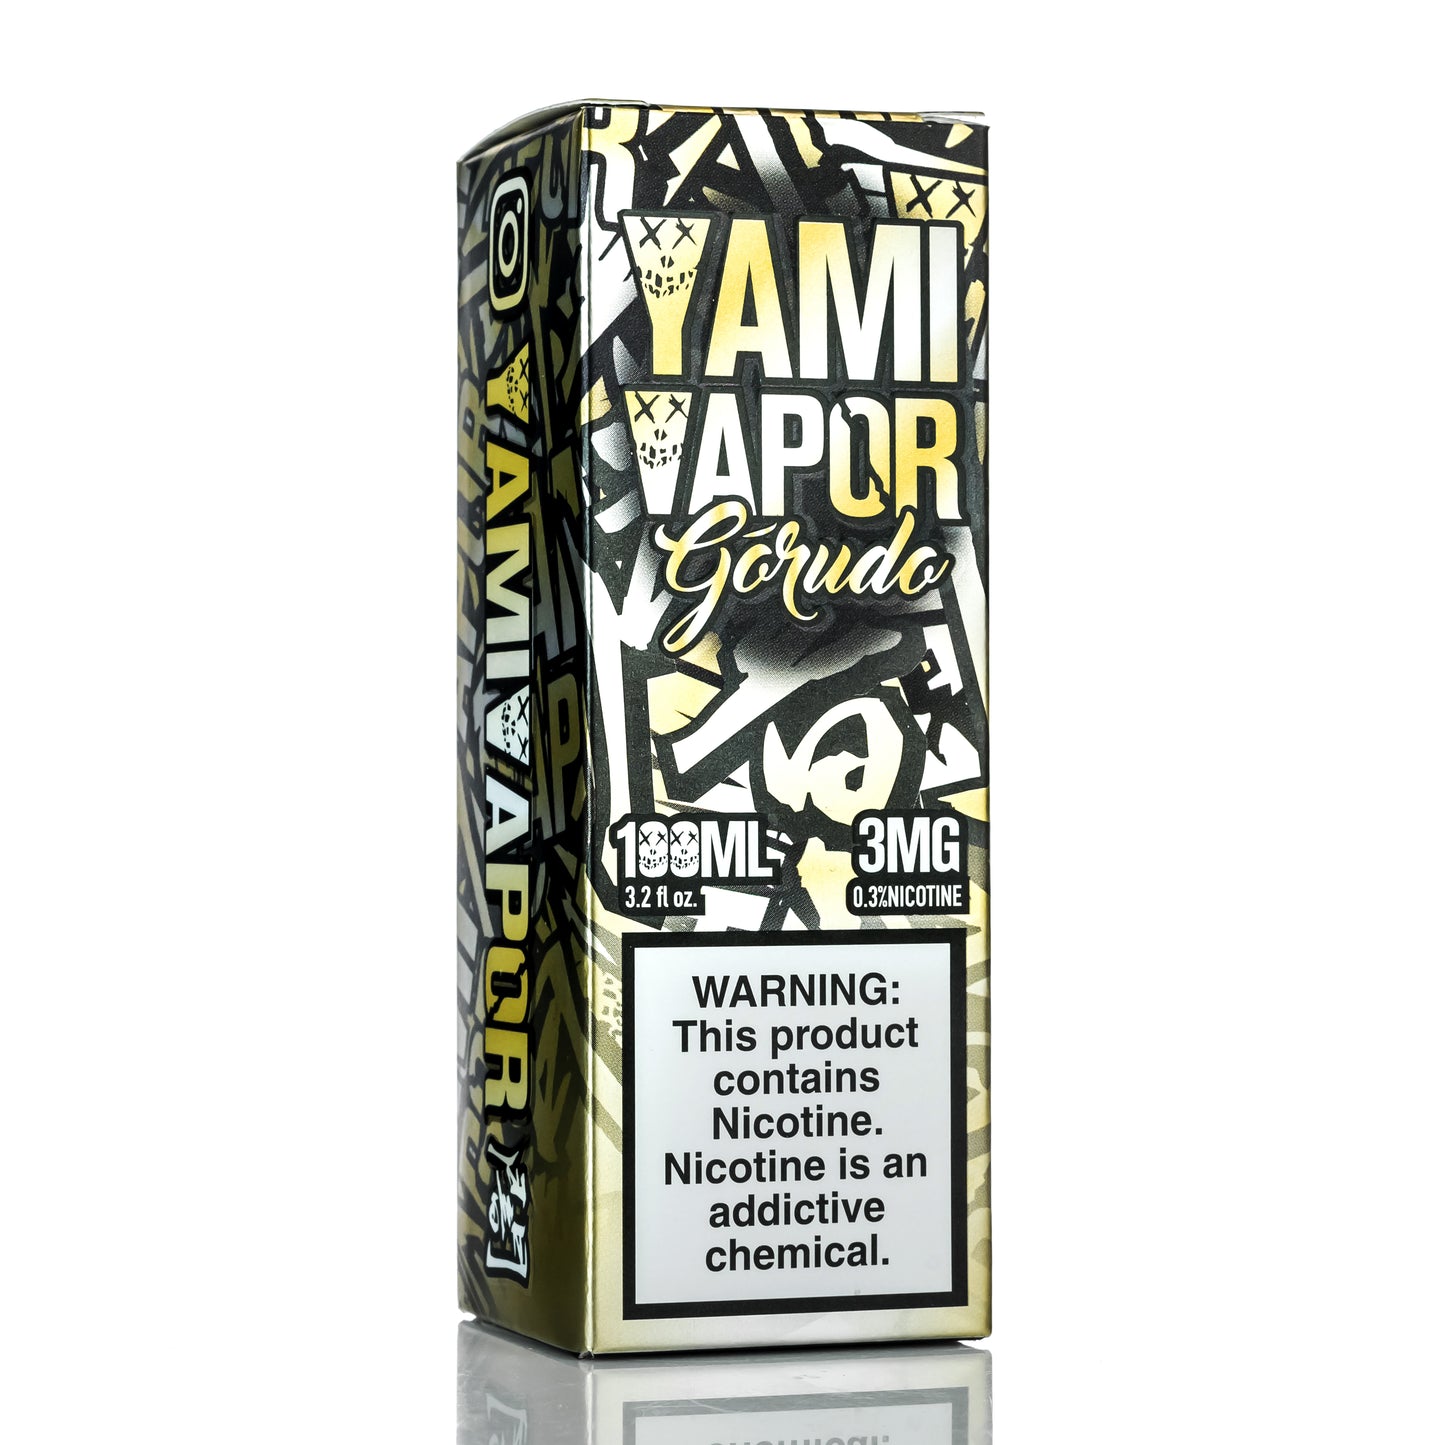 Yami Vapor Gorudo - 100ML